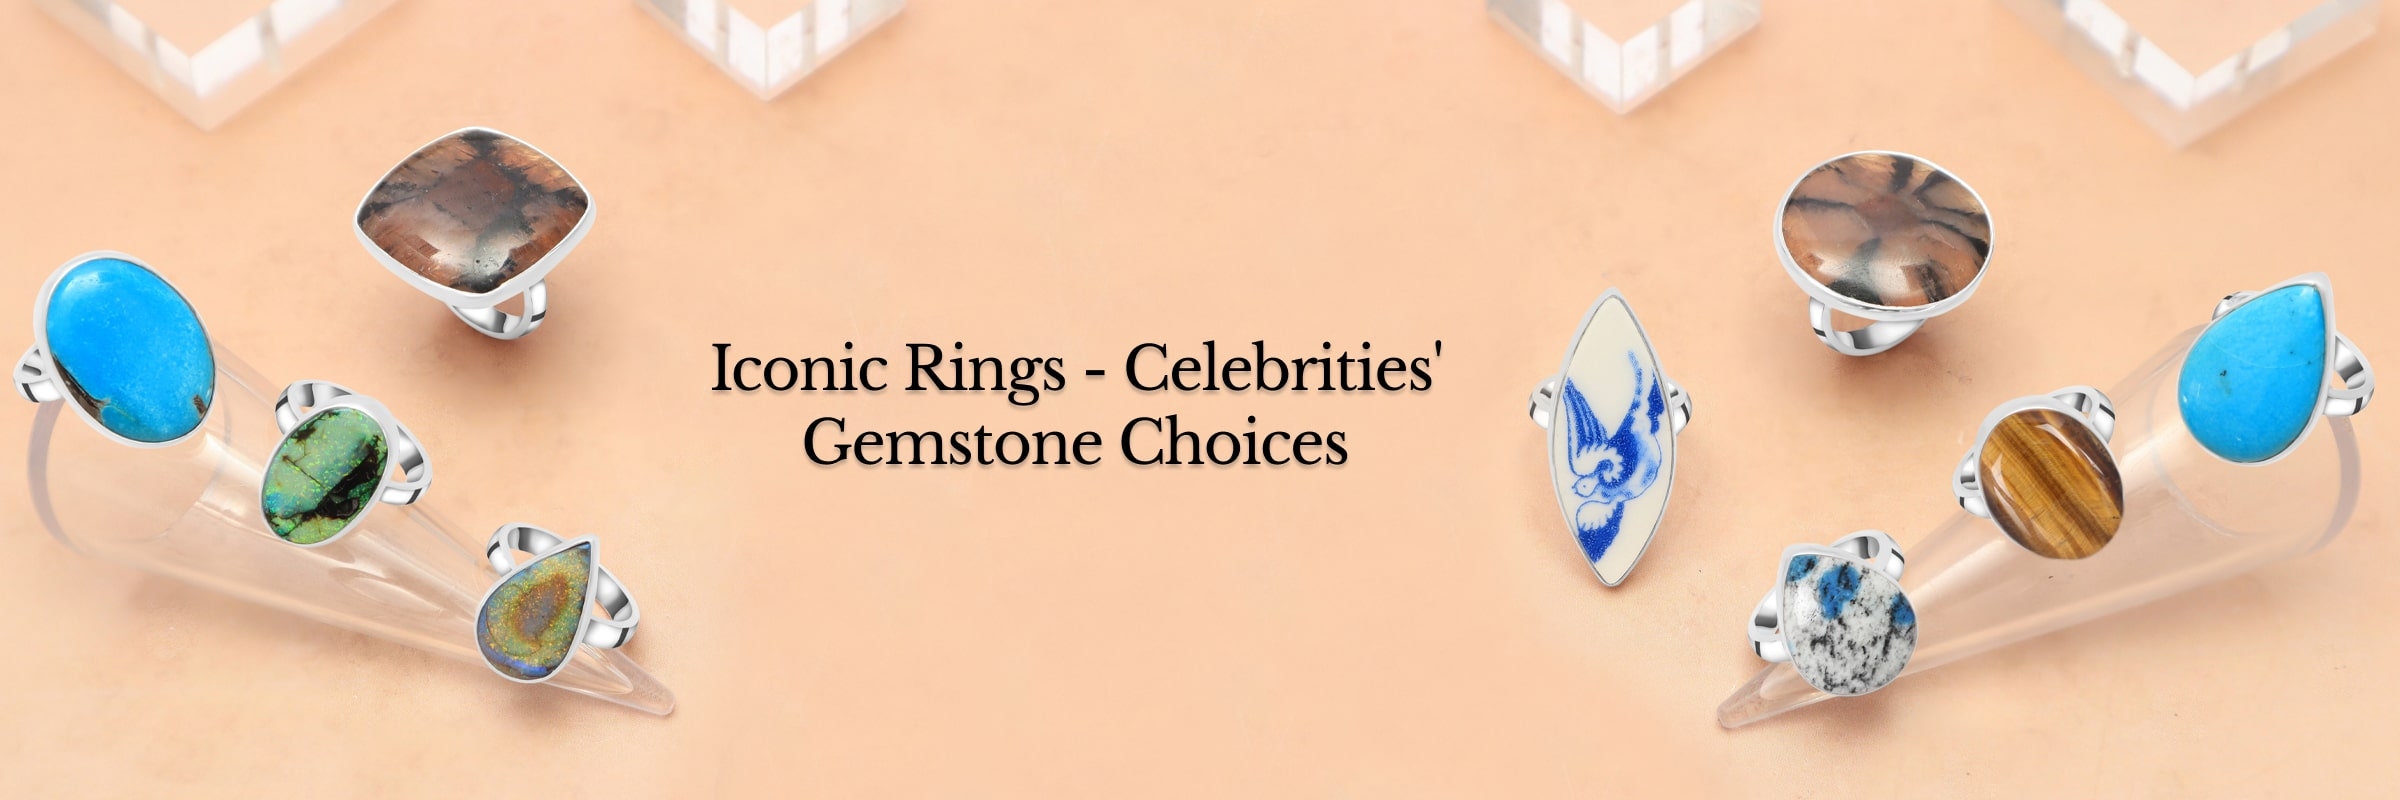 Gemstone Rings Worn by Celebrities